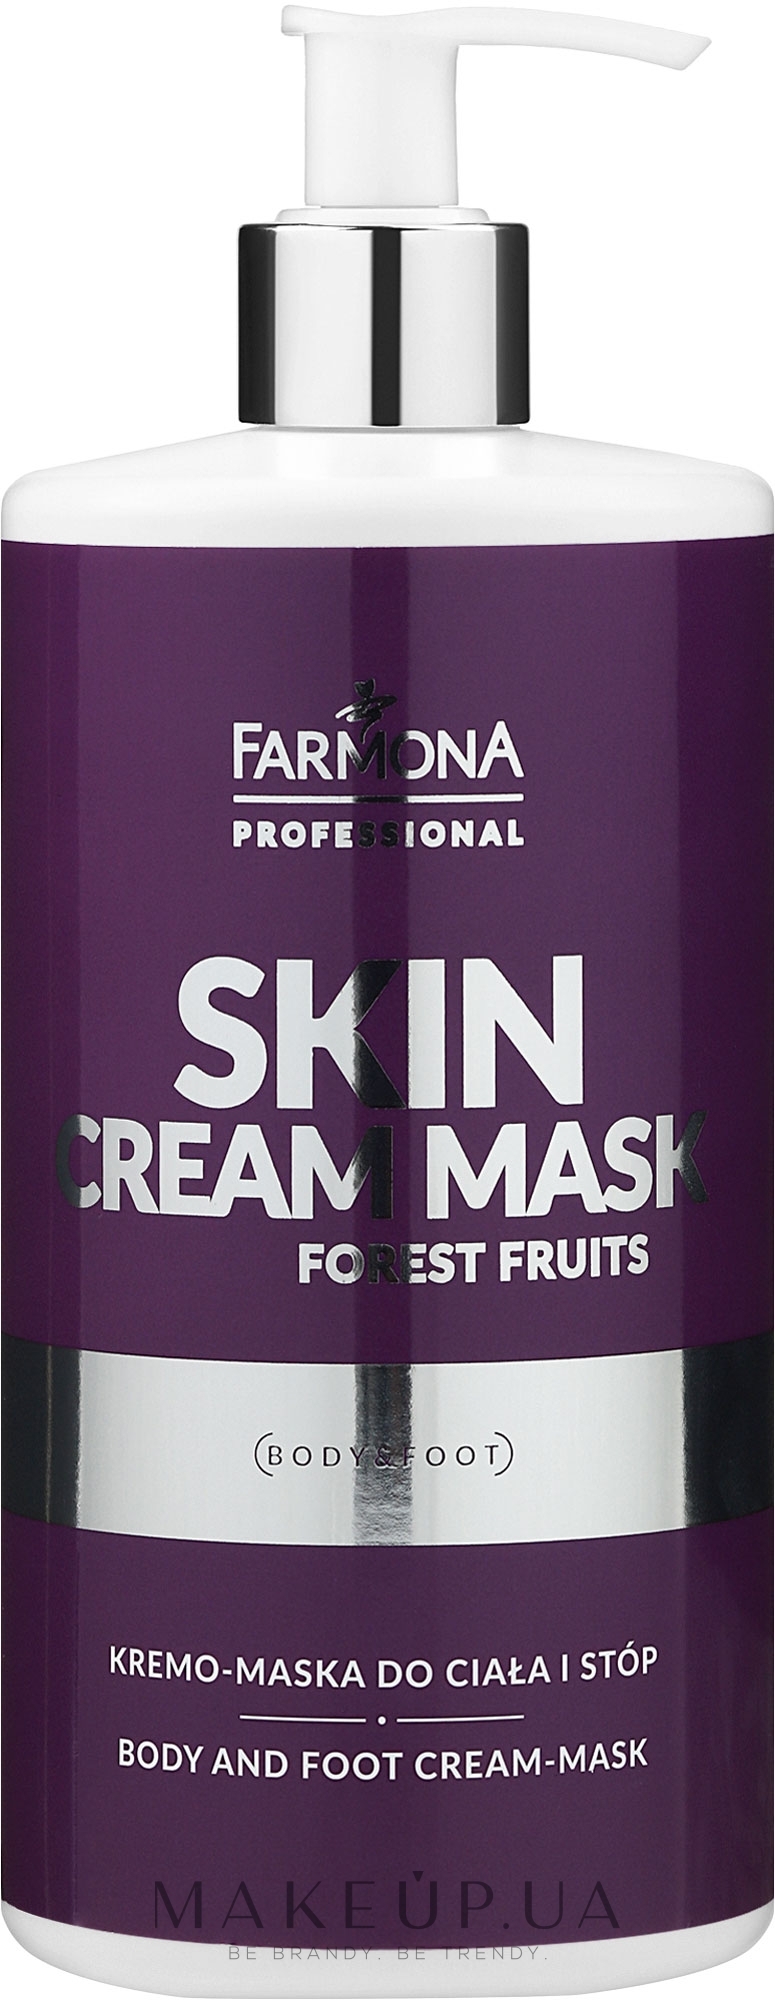 Крем-маска для тела и ног с ароматом лесных ягод - Farmona Professional Skin Cream Mask Forest Fruits — фото 500ml